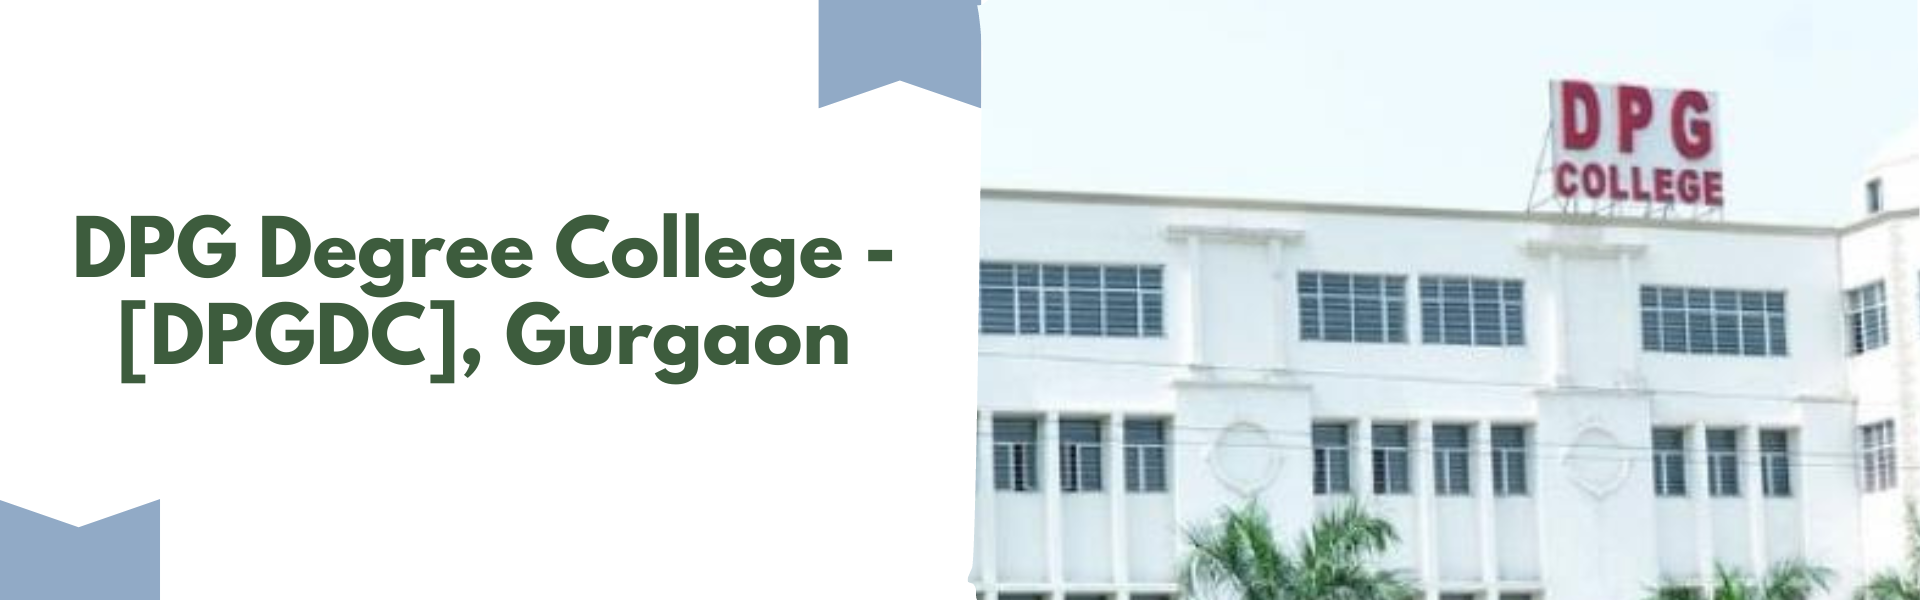 DPG Degree College - [DPGDC], Gurgaon